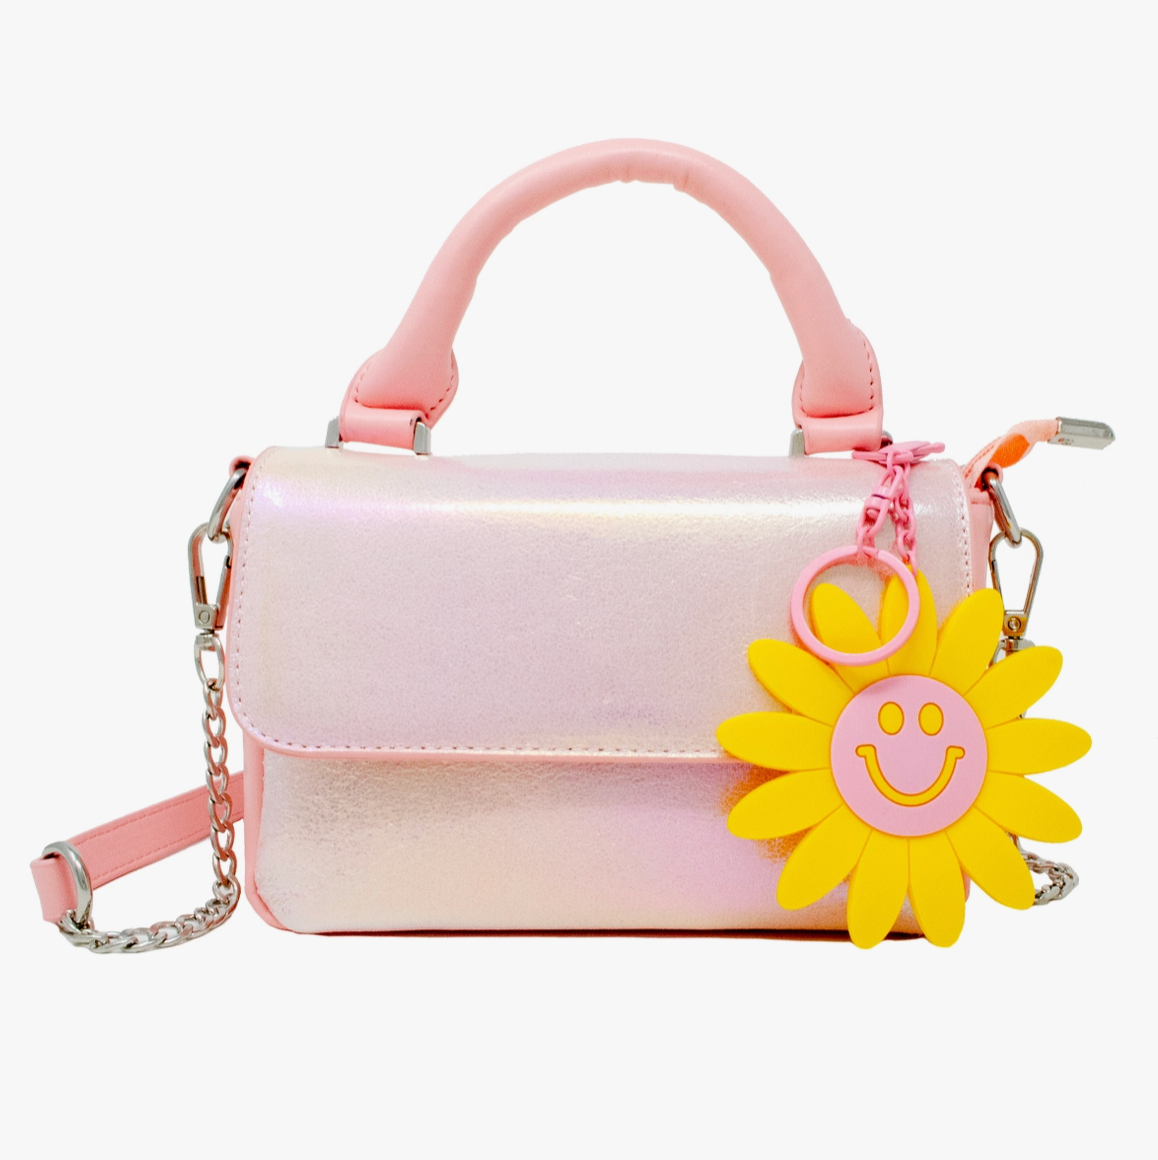 Zomi Gems Shiny Baguette Handbag